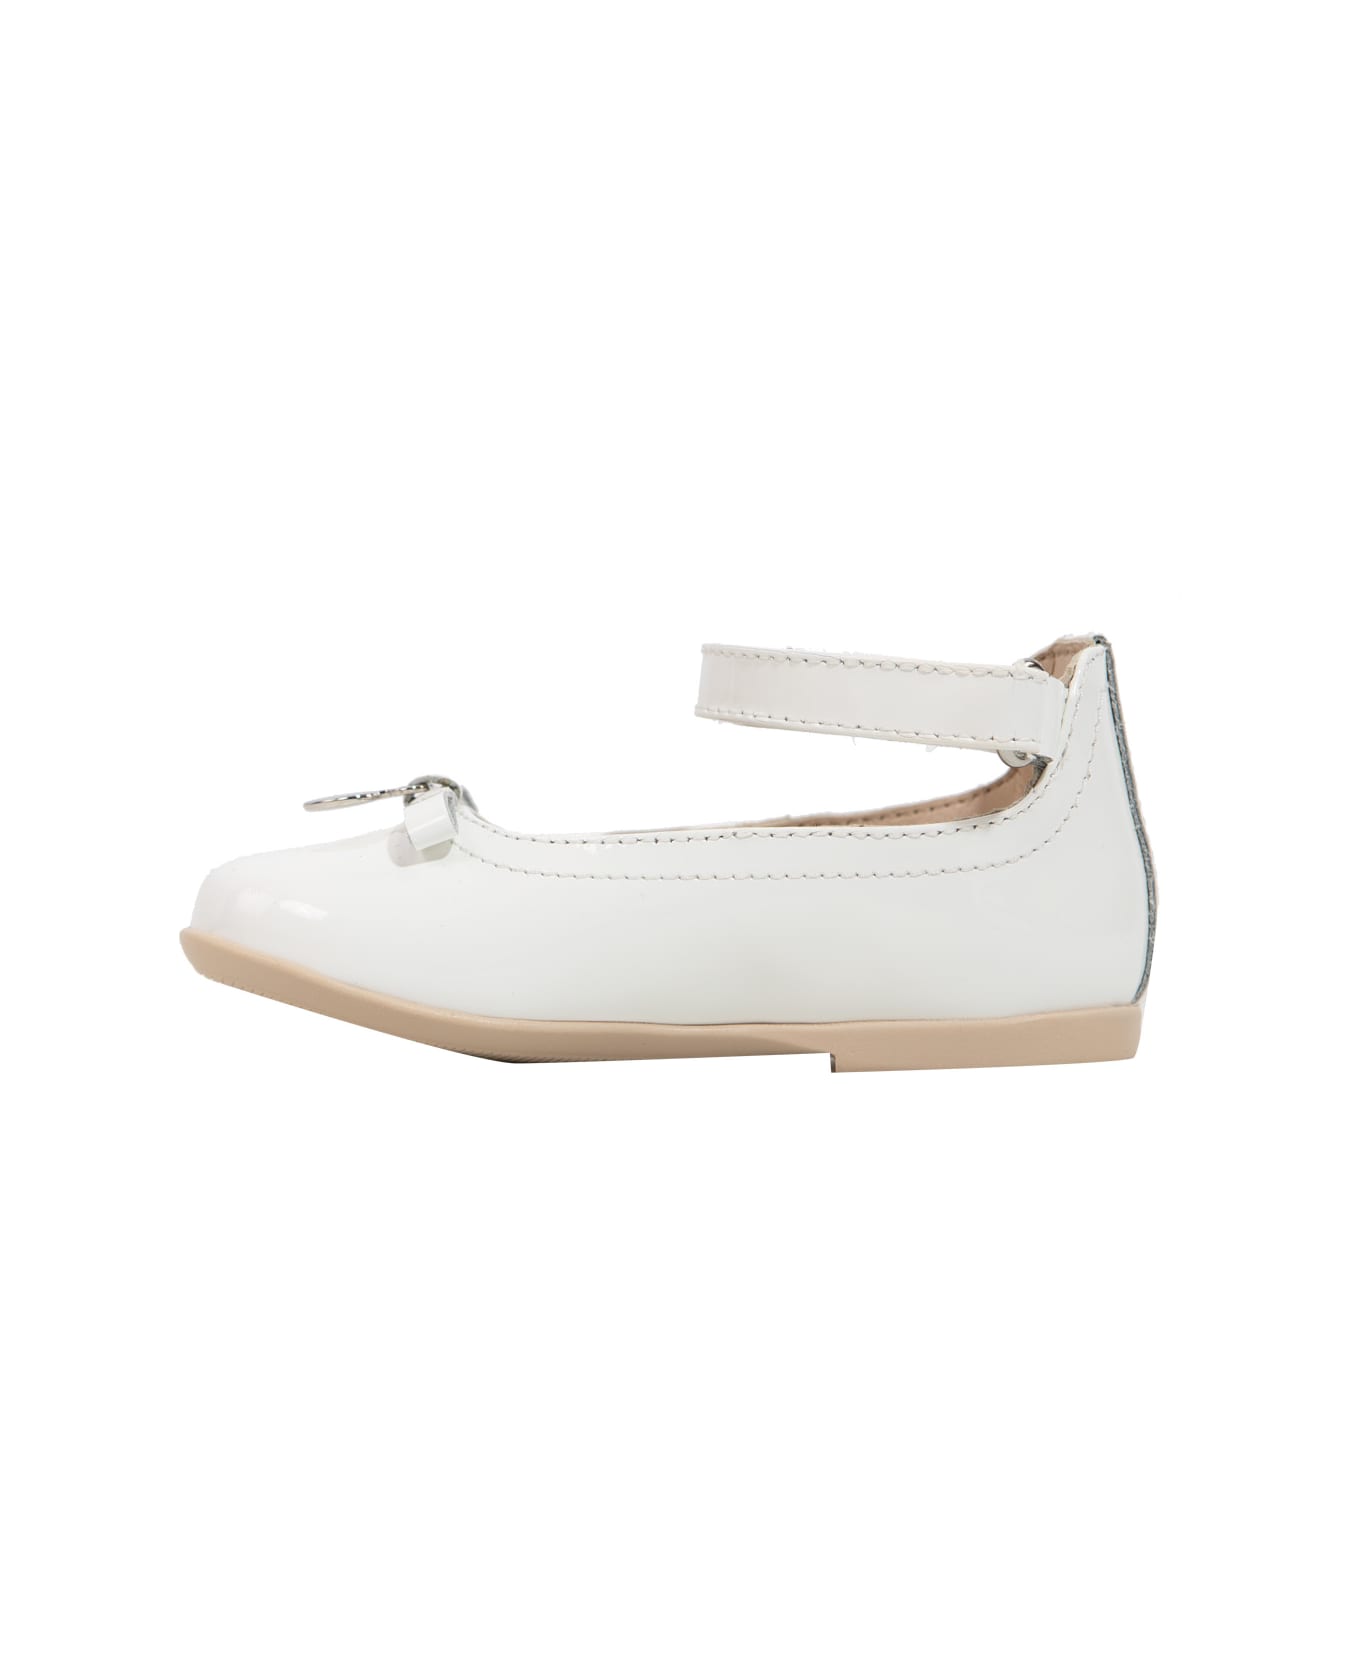 Emporio Armani Leather Shoes - White シューズ